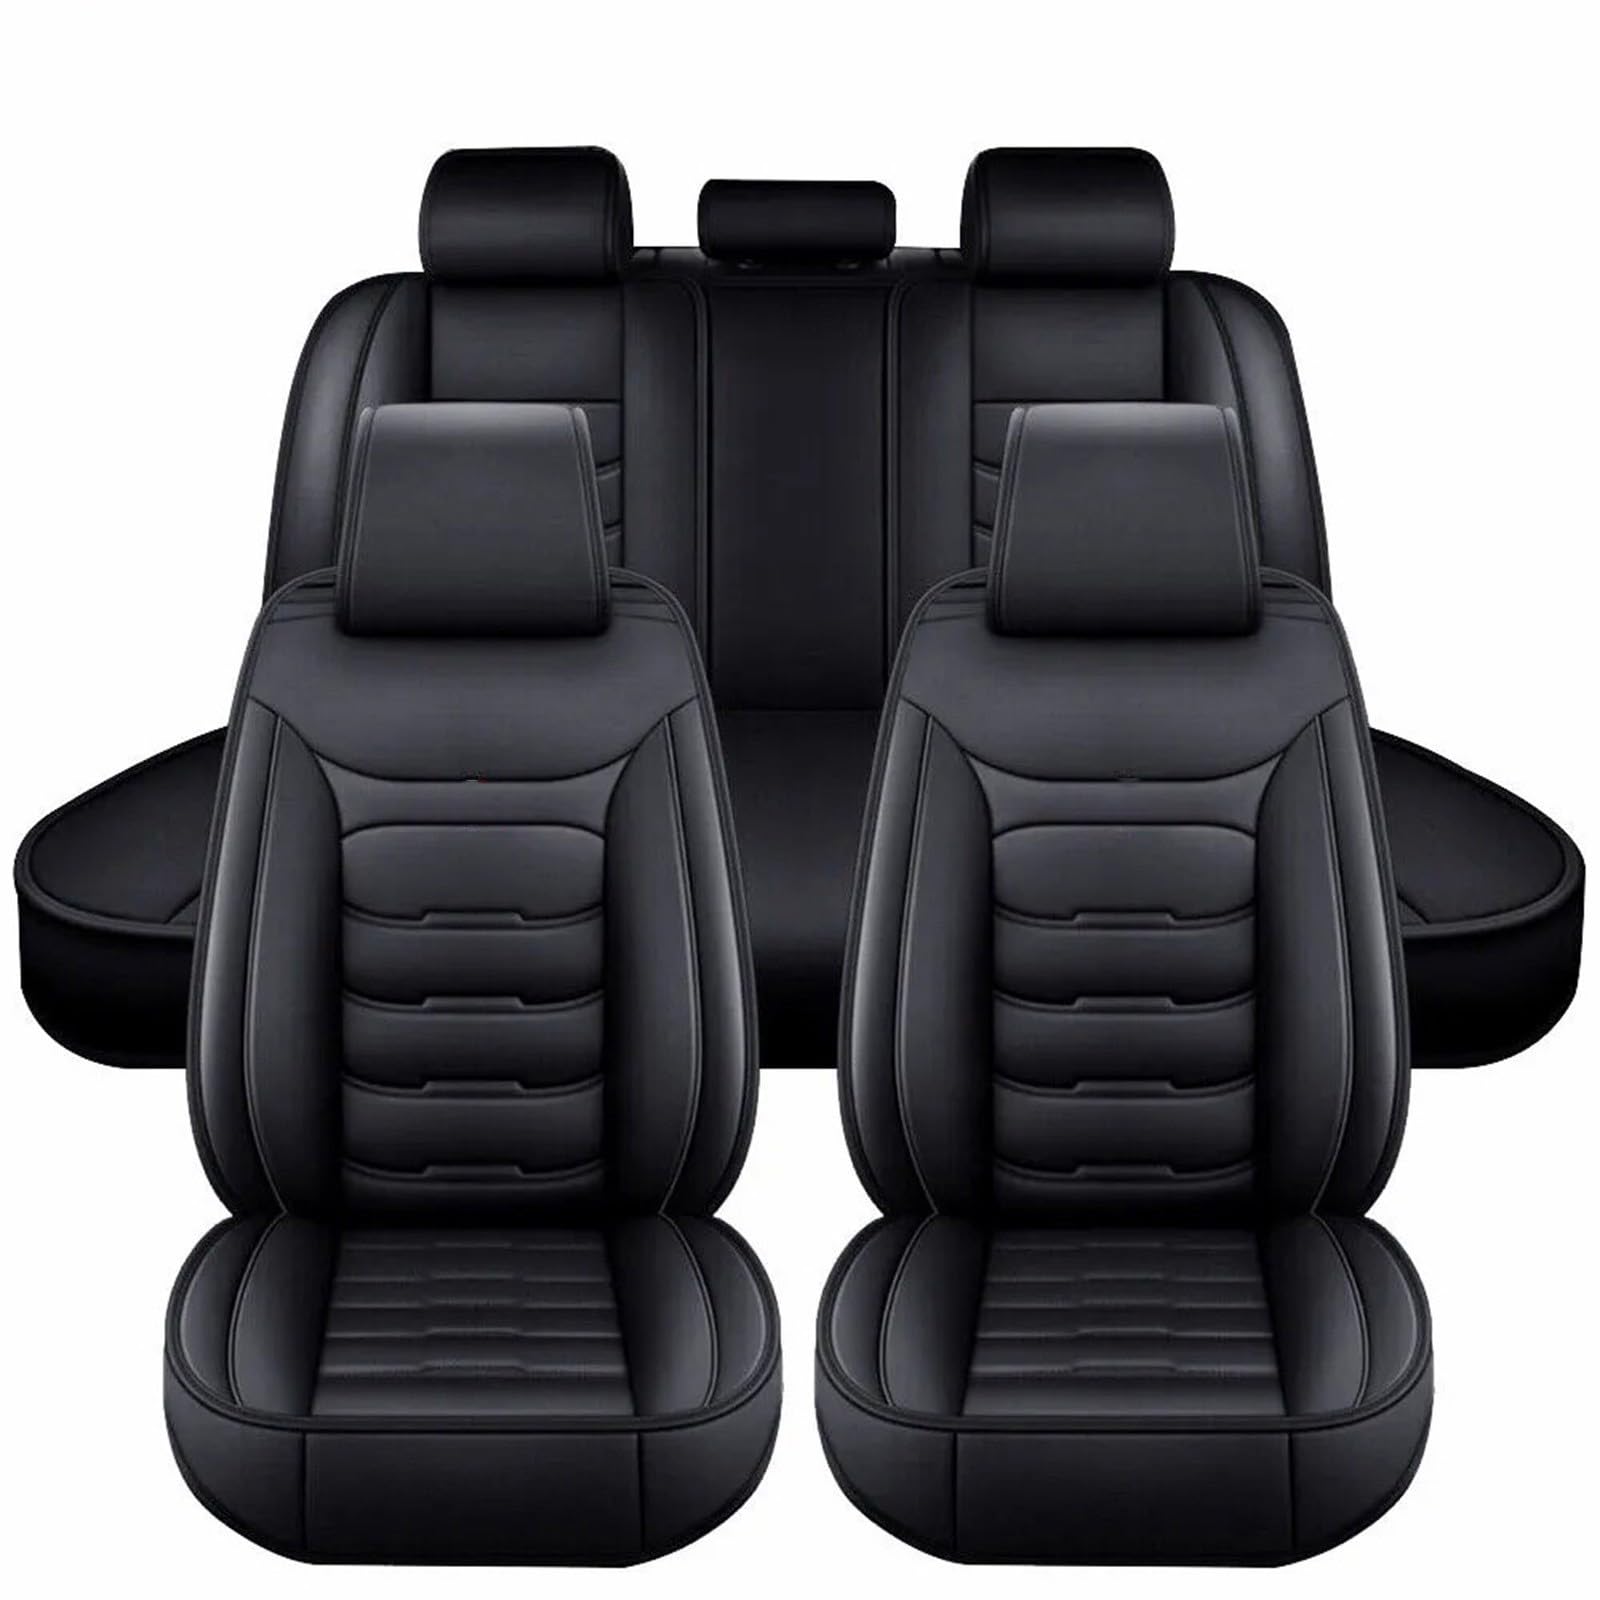 Full Set Auto Sitzbezüge für 𝗟𝗲𝘅𝘂𝘀 ES,Wasserdichtes VerschleißFest Leder Auto Sitzschutz,5 Stück Autositzbezüge von SePkus